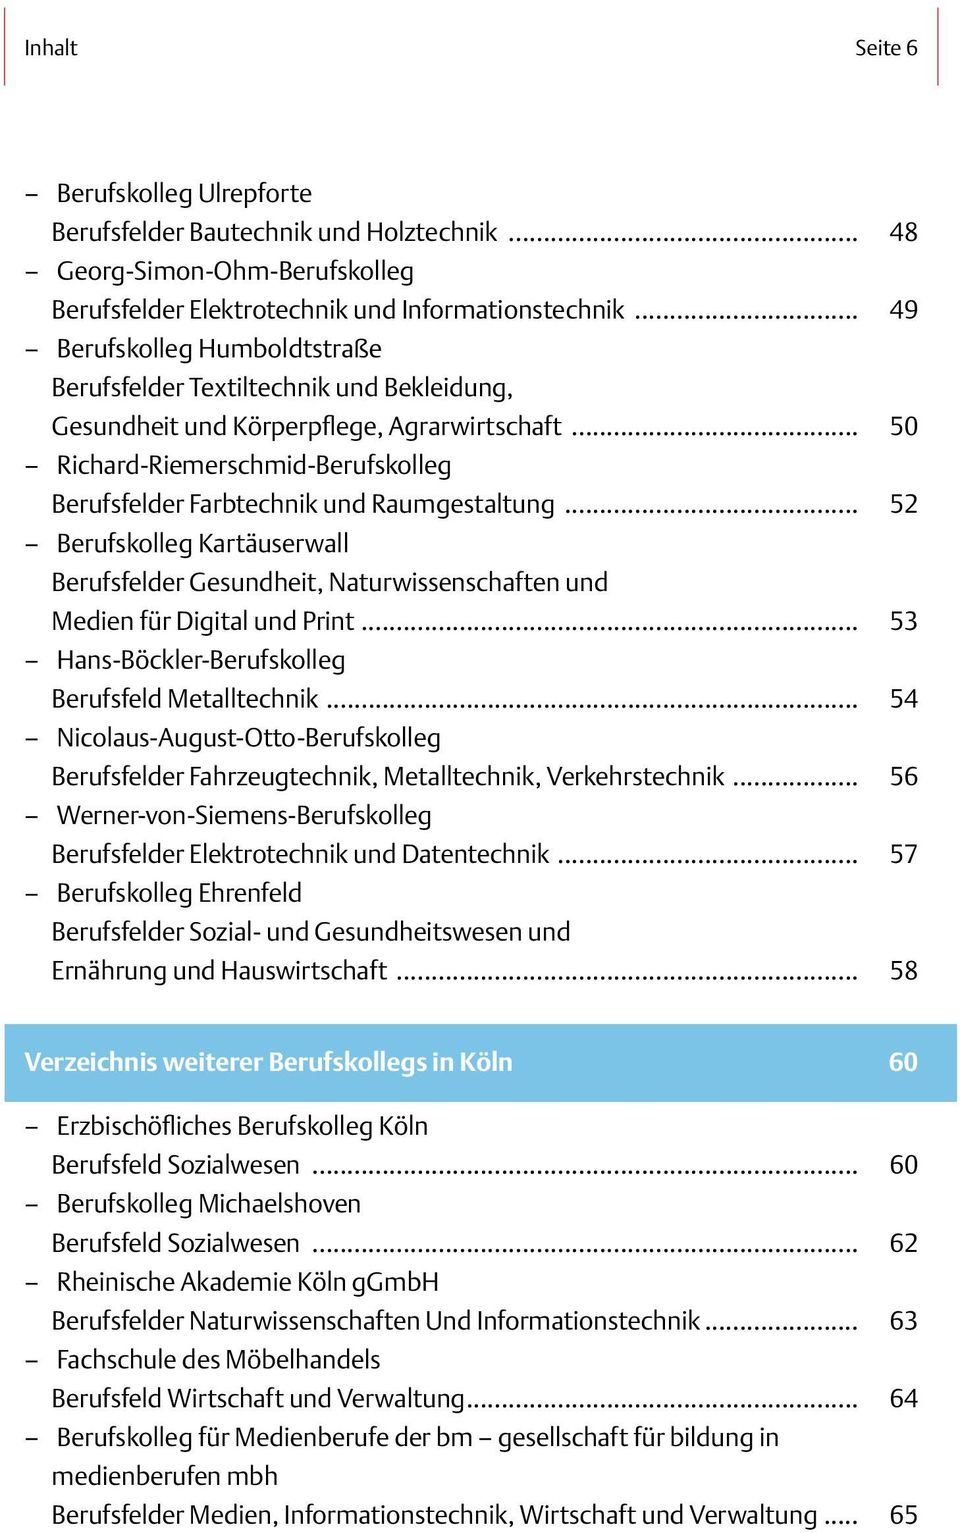 .. Berufskolleg Kartäuserwall Berufsfelder Gesundheit, Naturwissenschaften und Medien für Digital und Print... Hans-Böckler-Berufskolleg Berufsfeld Metalltechnik.